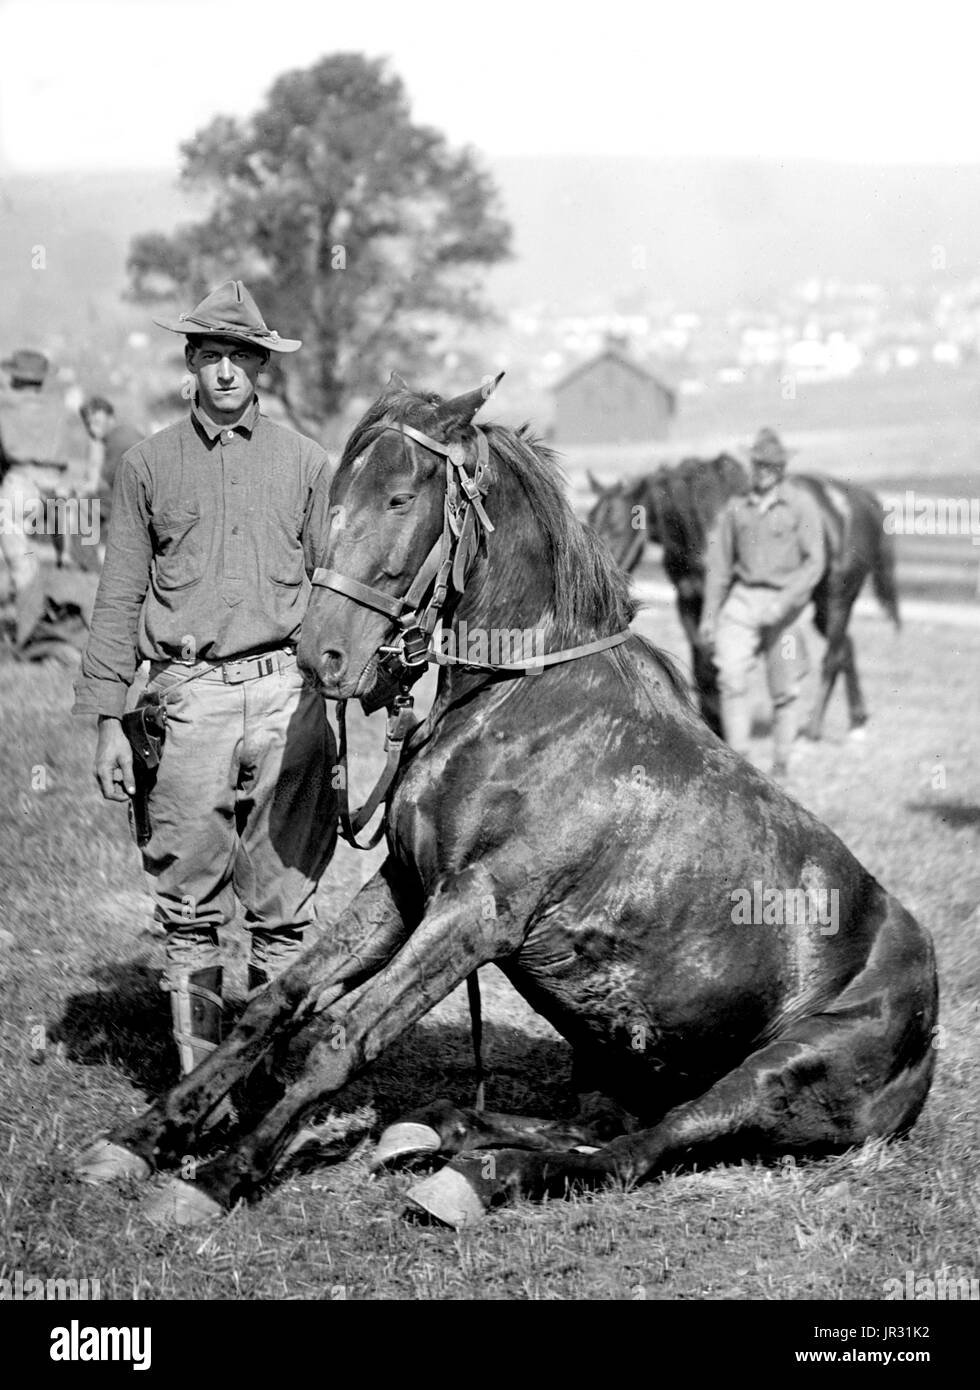 US-Armee Pferd stunts, B Truppe, 15. US-Kavallerie, Frostburg, Maryland. Die Vereinigten Staaten Kavallerie war die Bezeichnung der berittenen Truppe von der United States Army vom späten 18. bis ins frühe 20. Jahrhundert. Fotografiert von National Photo Company, 1909. Stockfoto